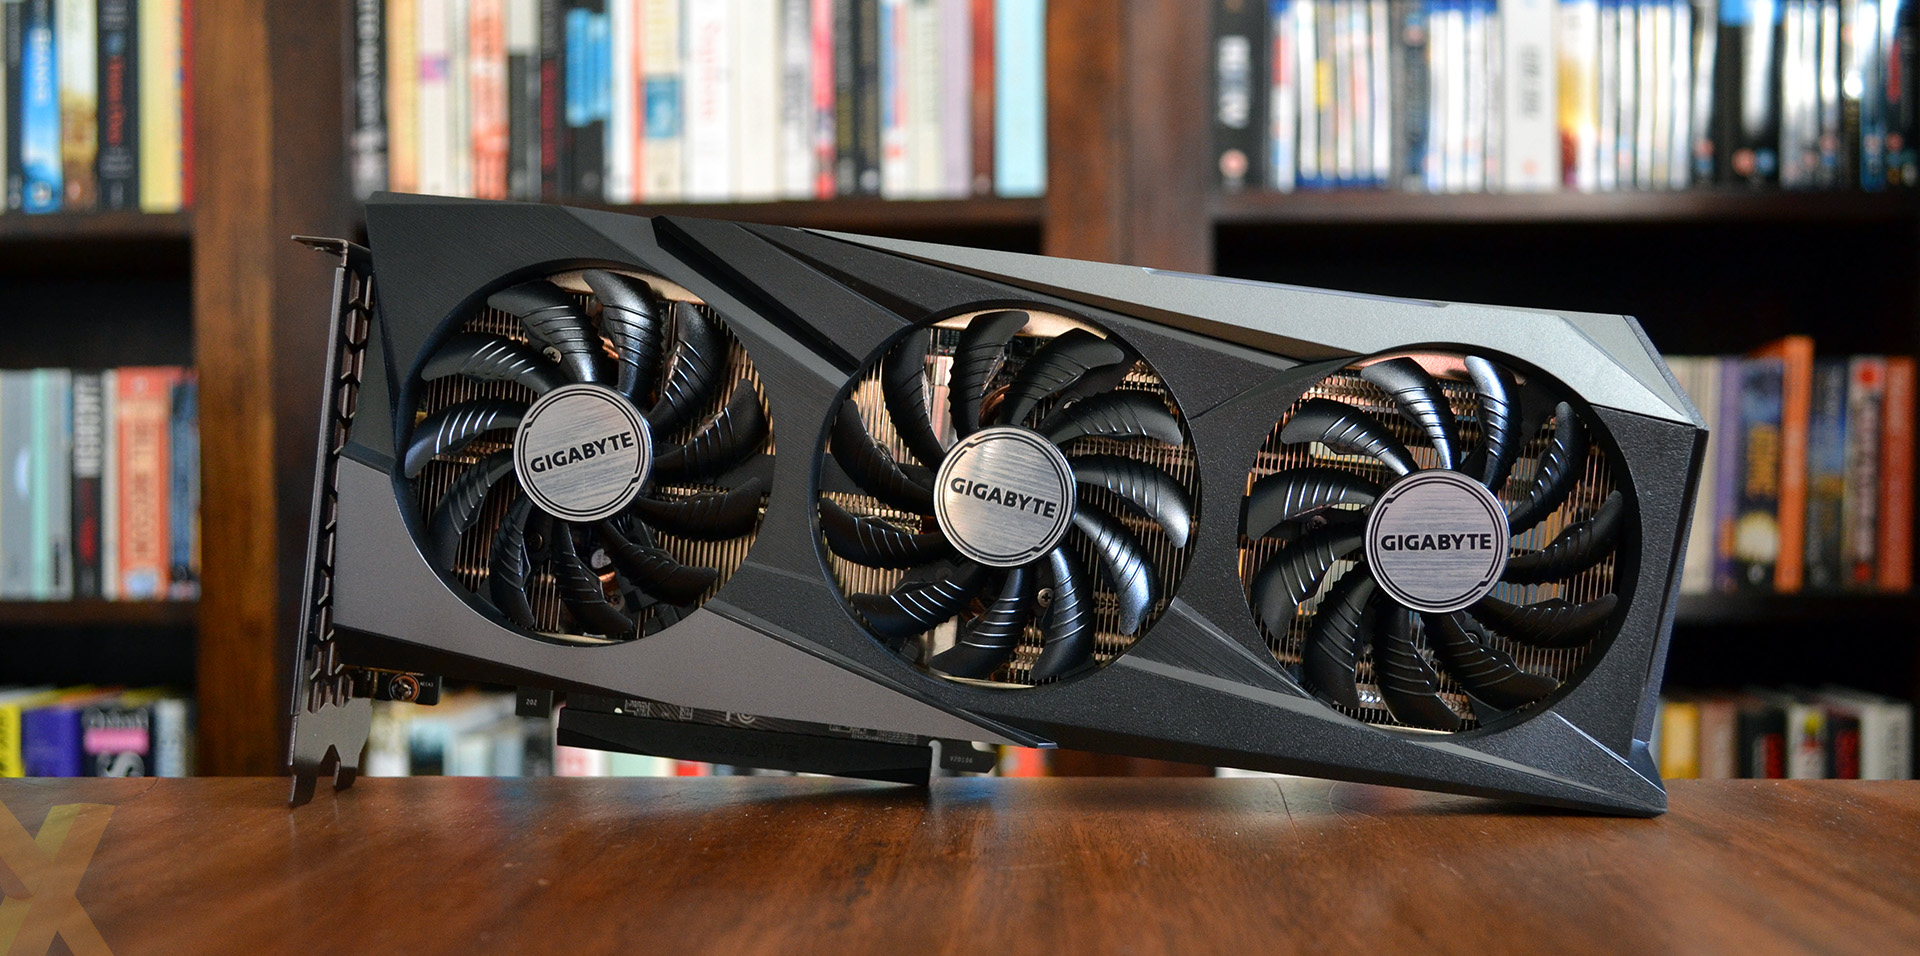 Review: Gigabyte GeForce RTX 3060 Gaming OC 12GB - Graphics - HEXUS.net ...